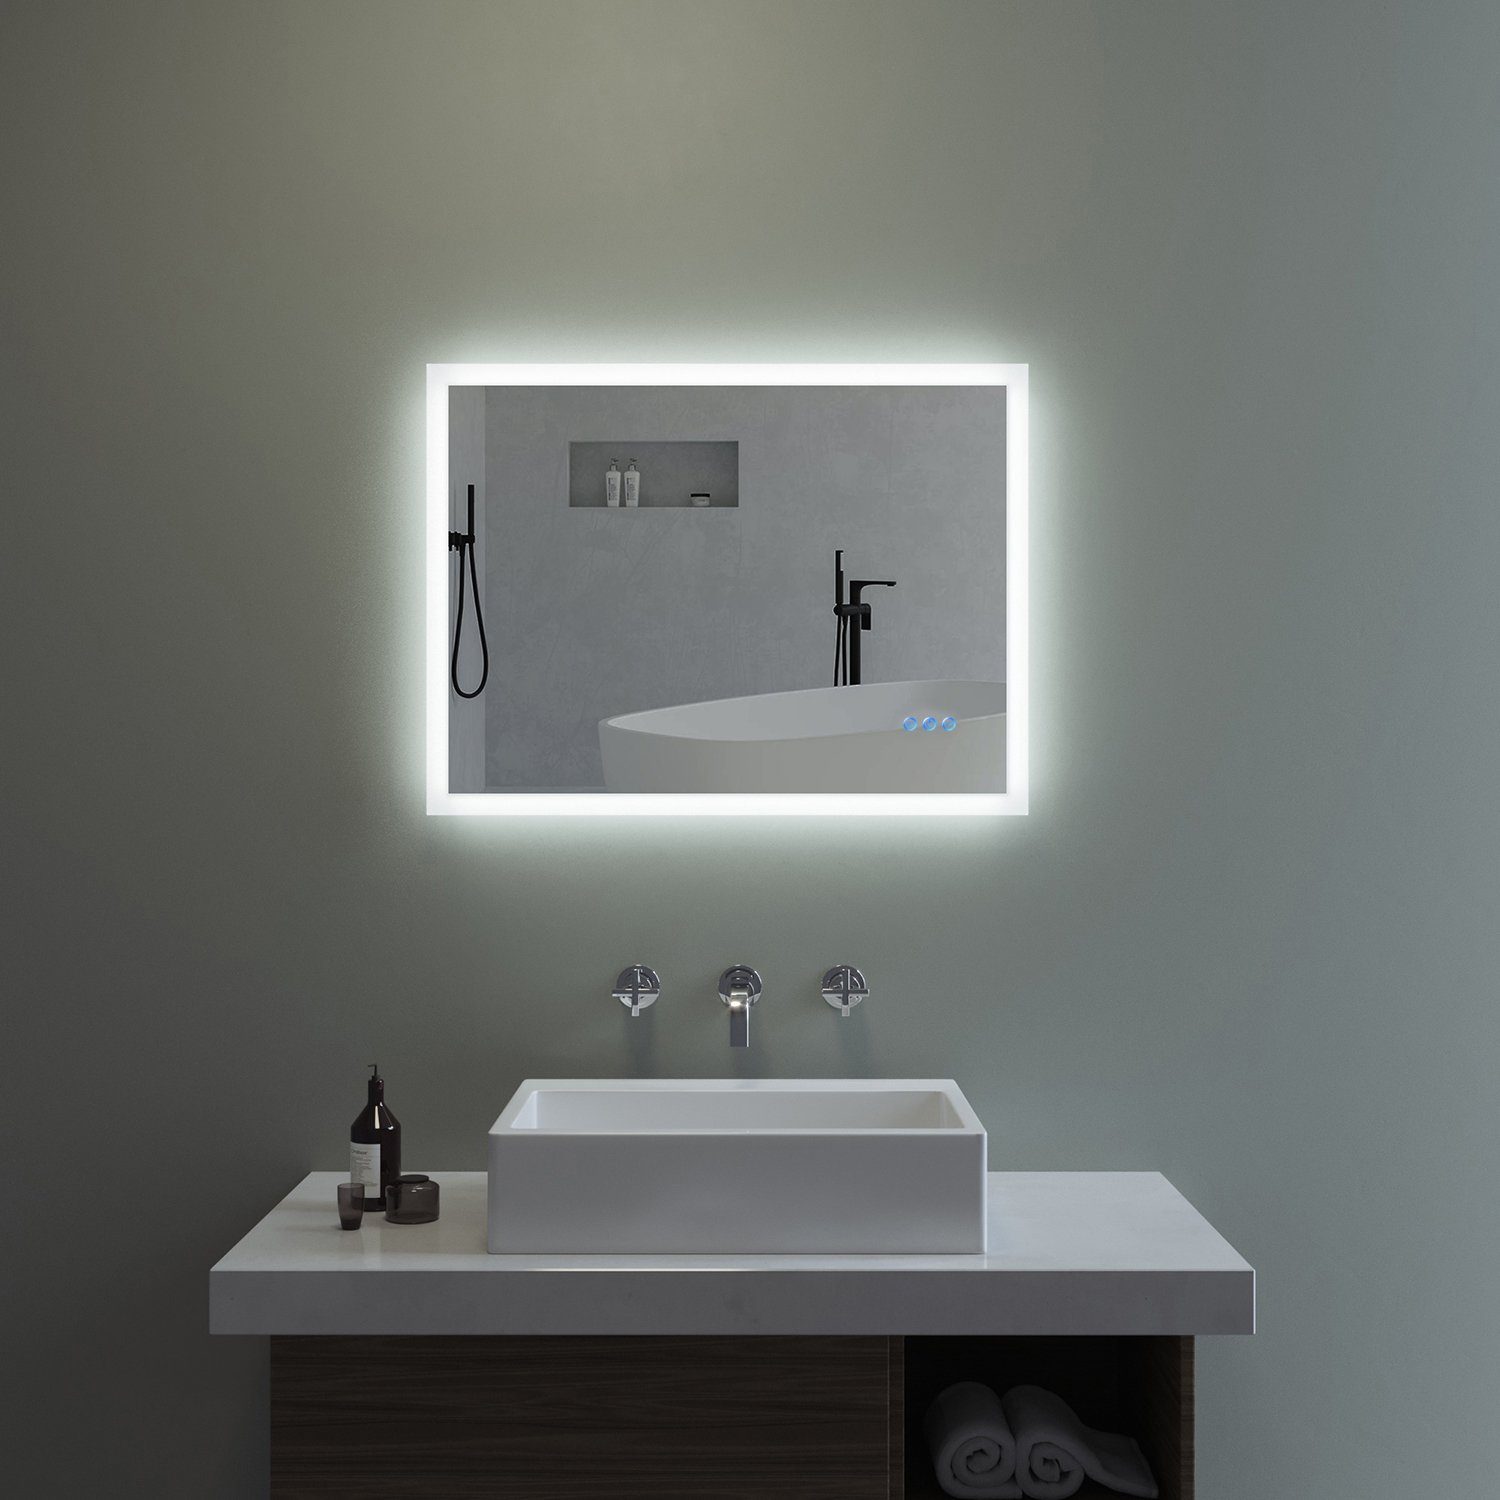 AQUABATOS LED-Lichtspiegel LED Badspiegel Lichtspiegel Badezimmerspiegel mit Beleuchtung (80x60cm 100x70cm 140x70cm Kaltweiß 6400K und Warmweiß 3000K, Dimmbar), Touch Schalter, Spiegelheizung, Antibeschlag, Energiesparend